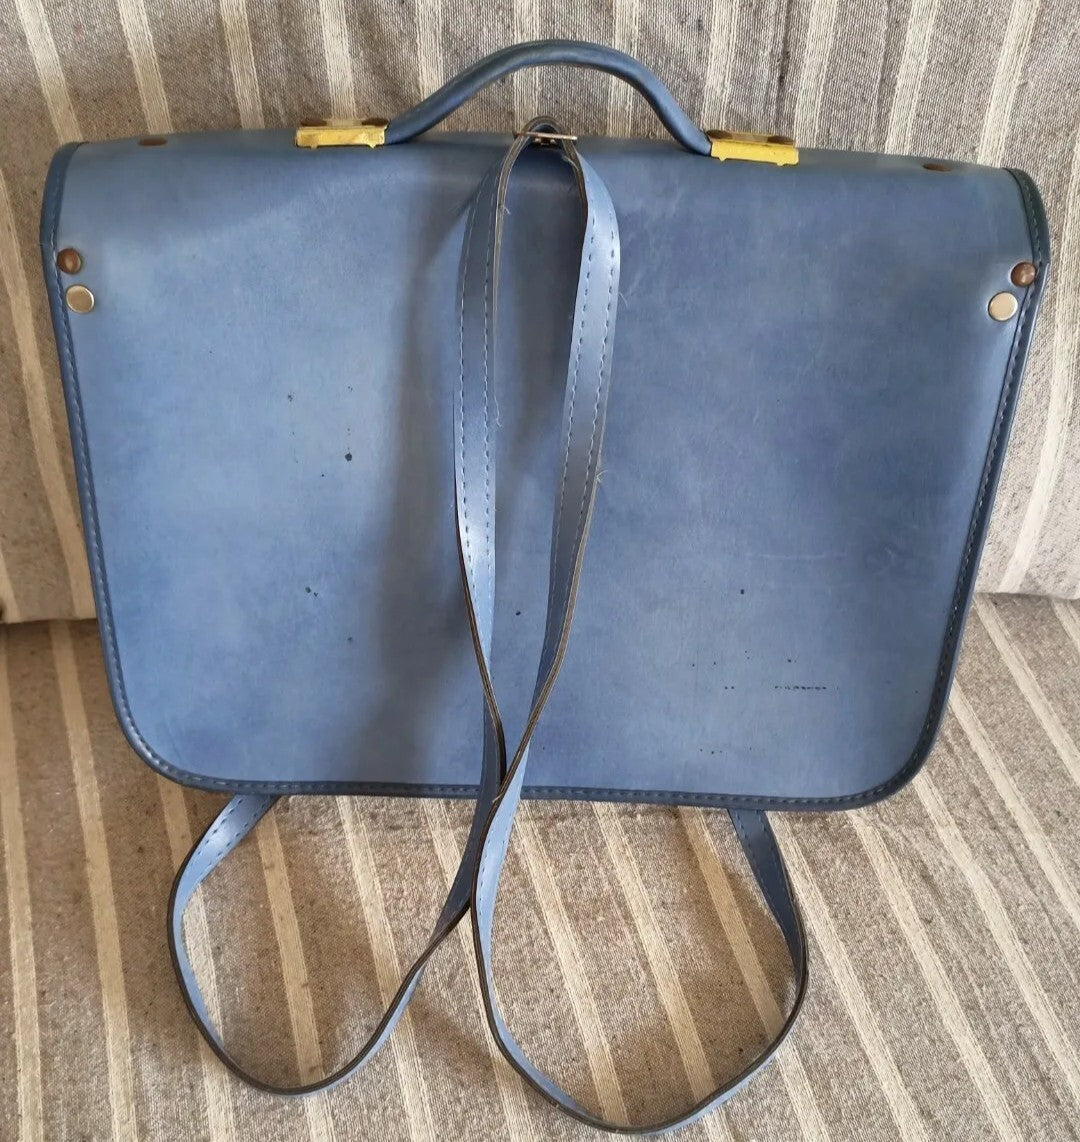 Original shoulder bag from the 70s